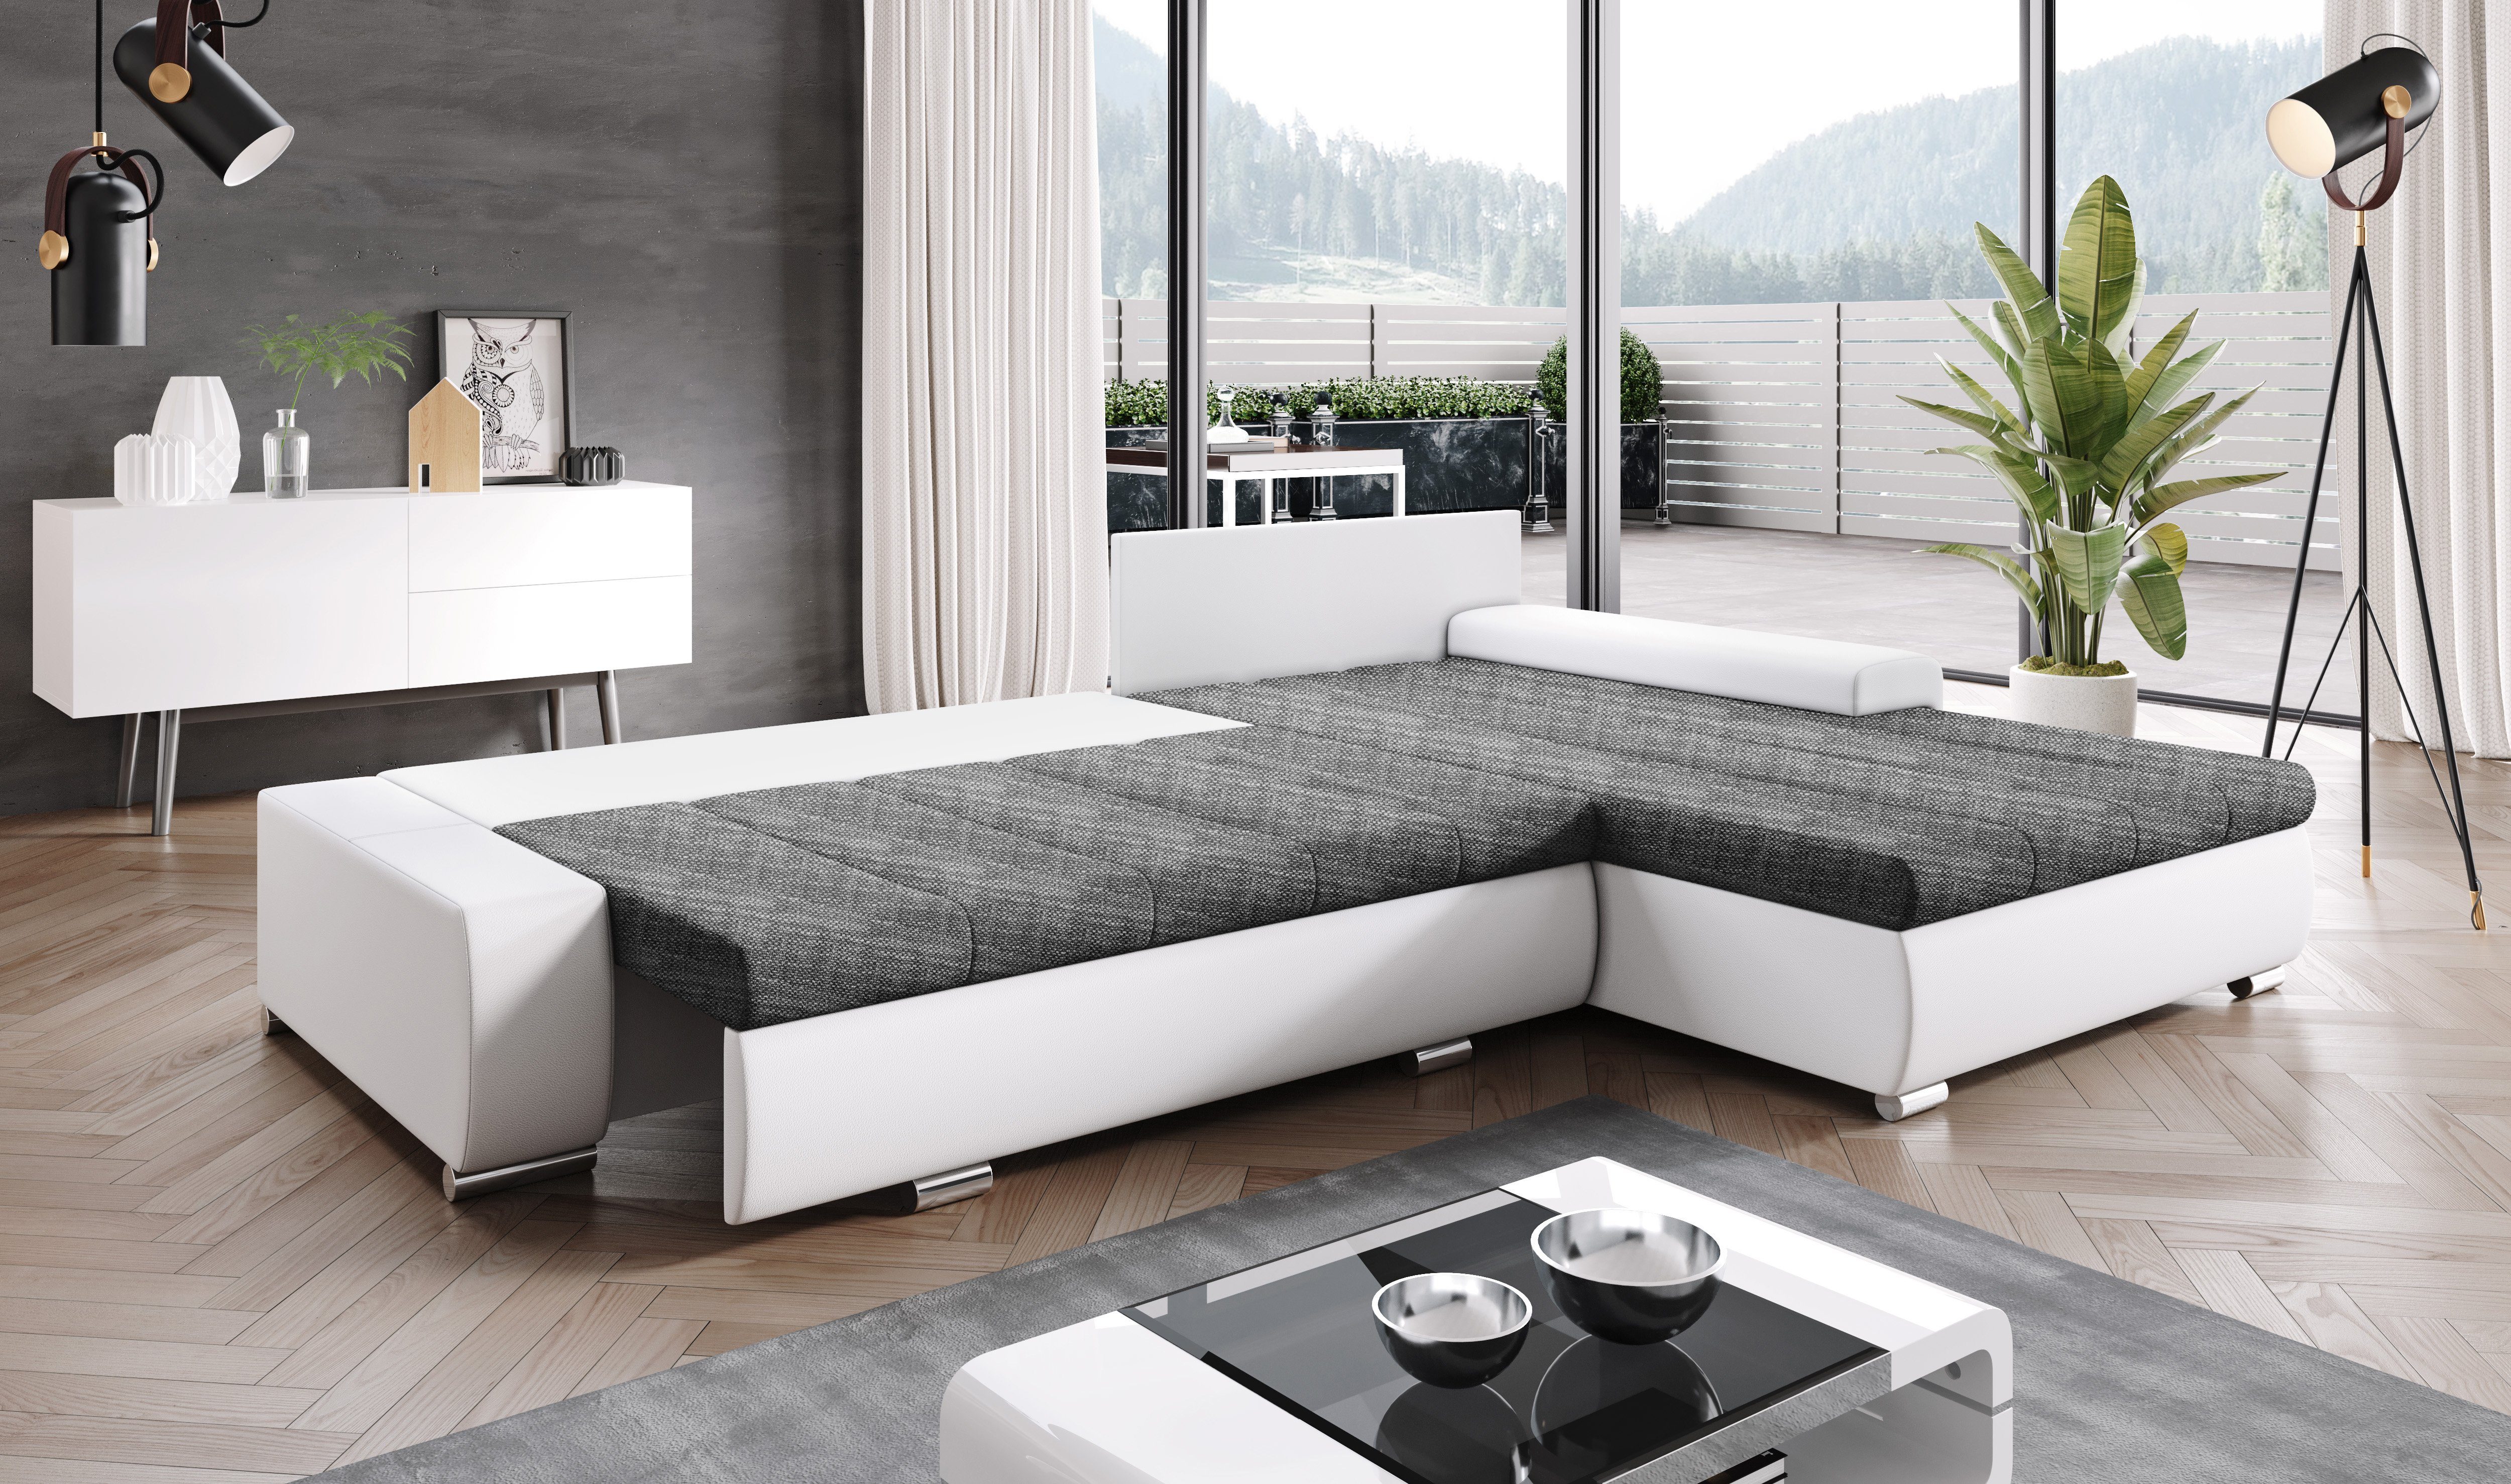 Furnix Ecksofa TOMMASO Sofa Made B297 Stoff/Kunstleder Bettkasten T210 Kissen Braun/Weiß cm, EU mit Couch, in MA120 BE01 H85 x x Schlaffunktion hochwertig